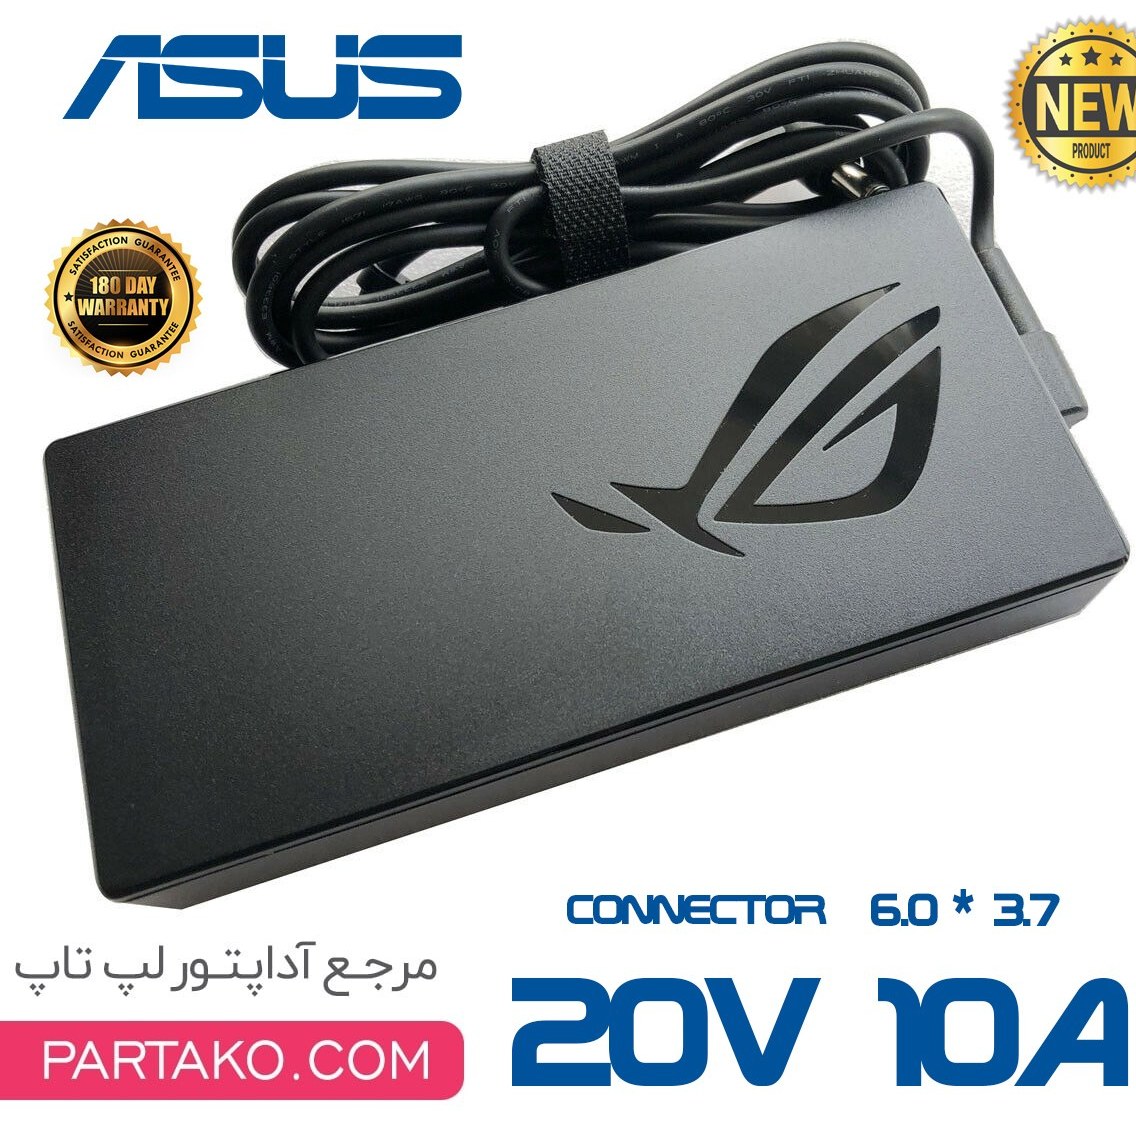 Chargeur ordinateur portable ASUS 20v10a 6.0x3.7